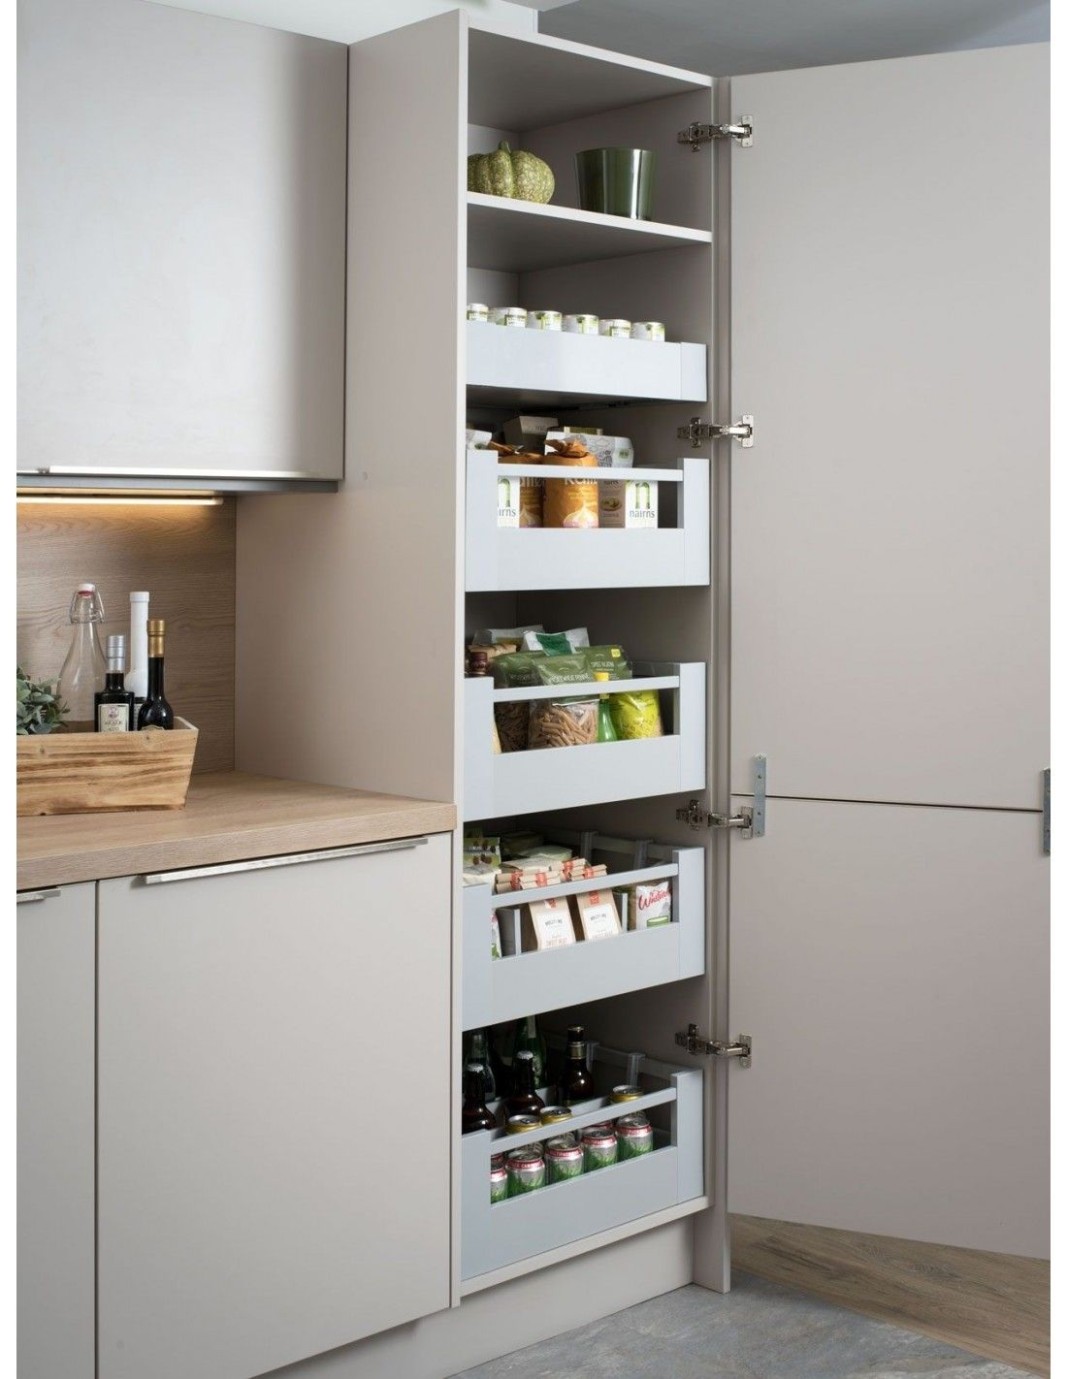 5mm Blum Antaro Space Tower Internal Drawer Sets 5mm Depth  - 400mm kitchen cabinets